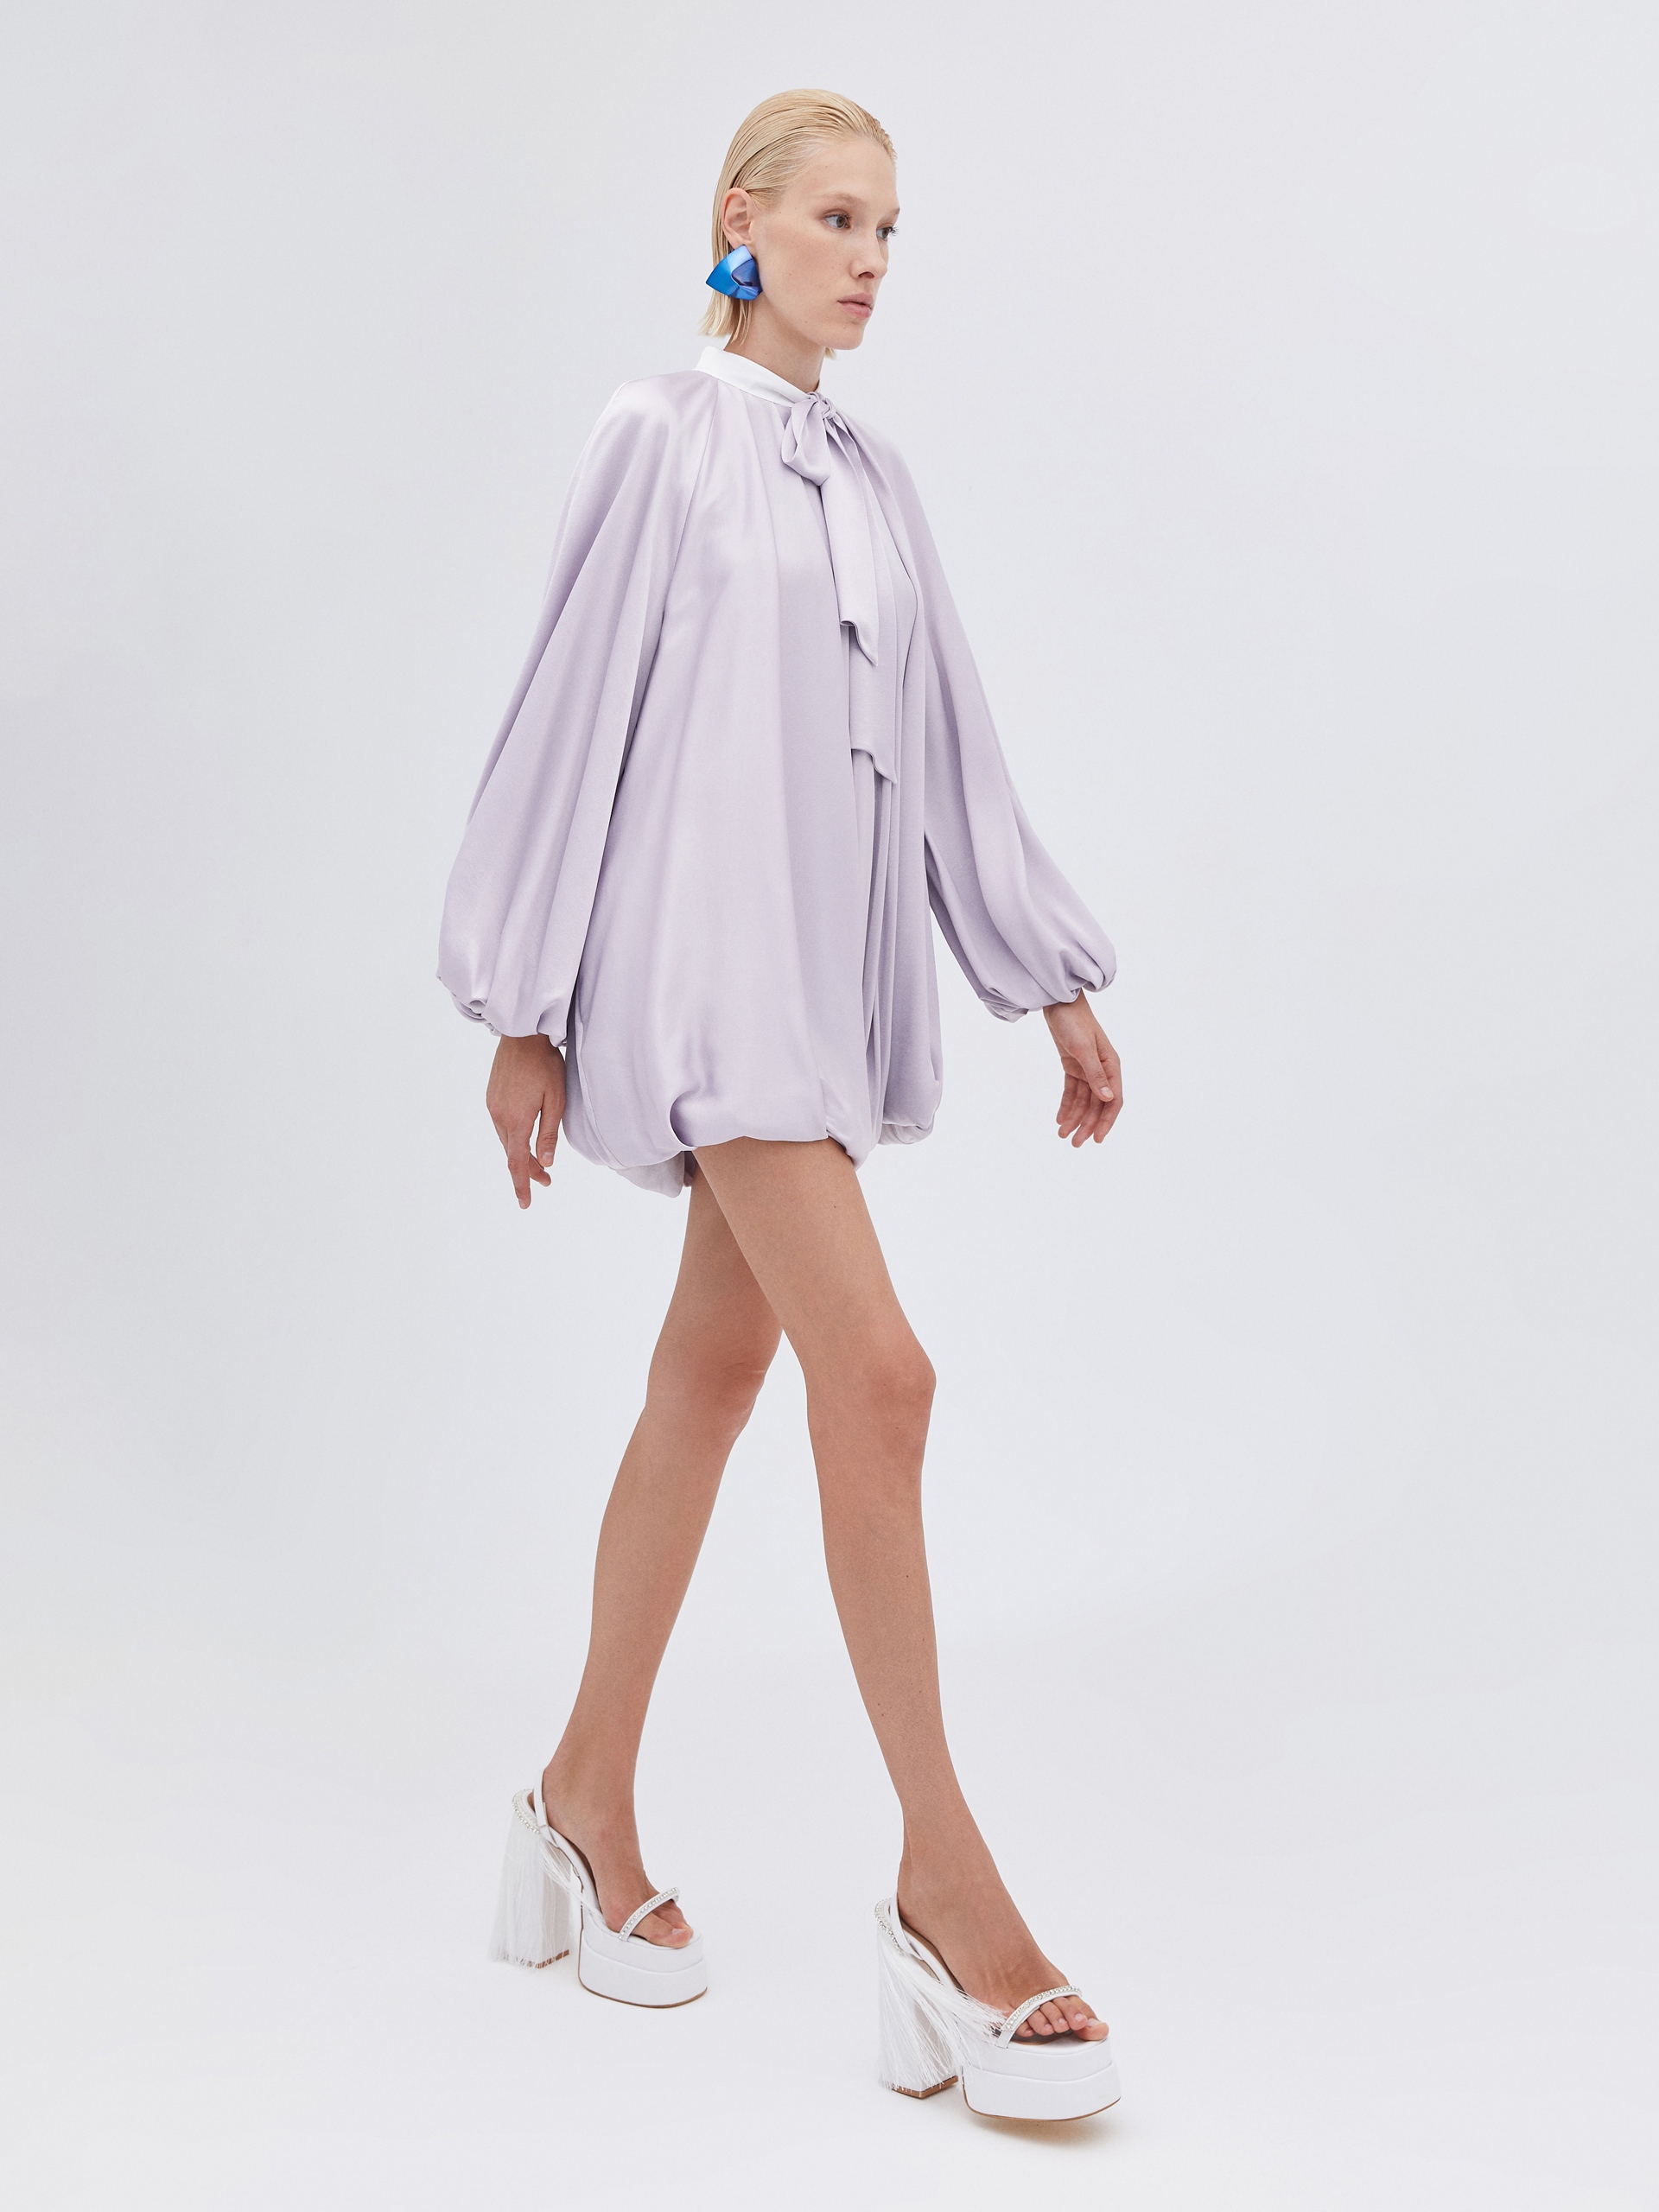 Fall Fashion - Gray Tunic Dress  Балетки, Сорокалетний